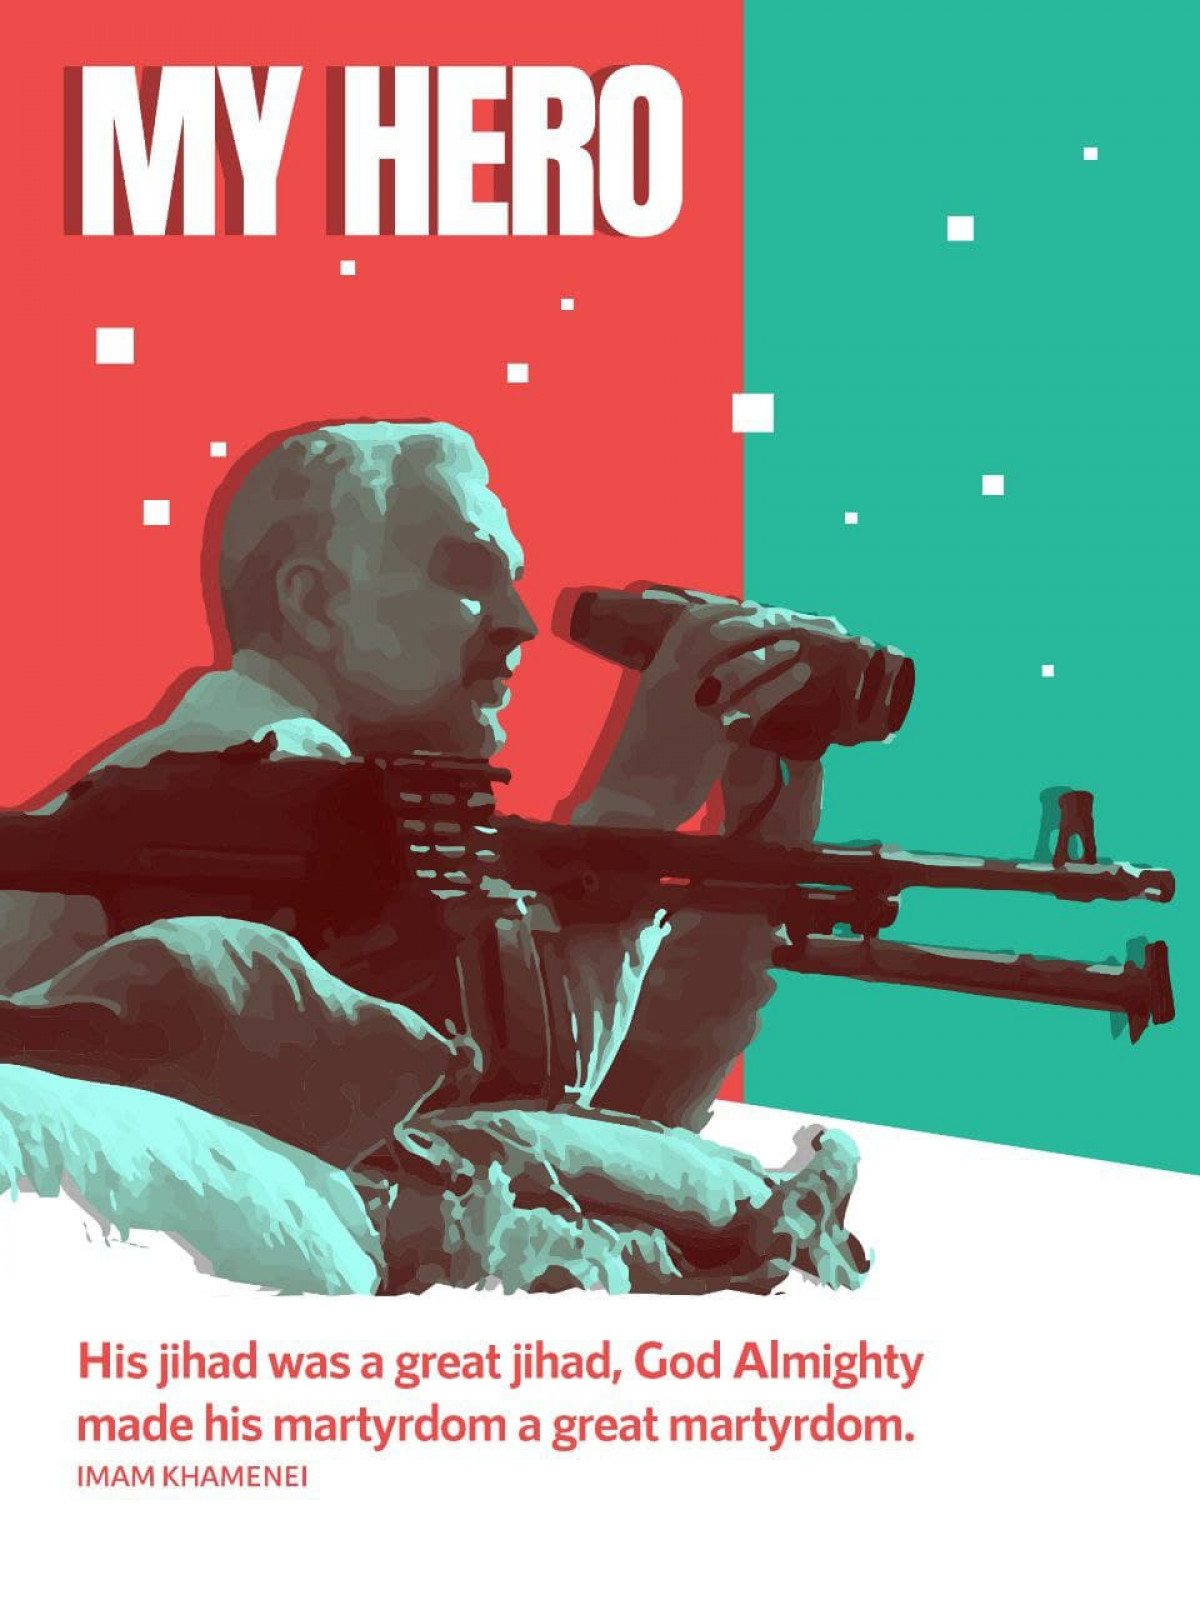 His jihad was a great jihad